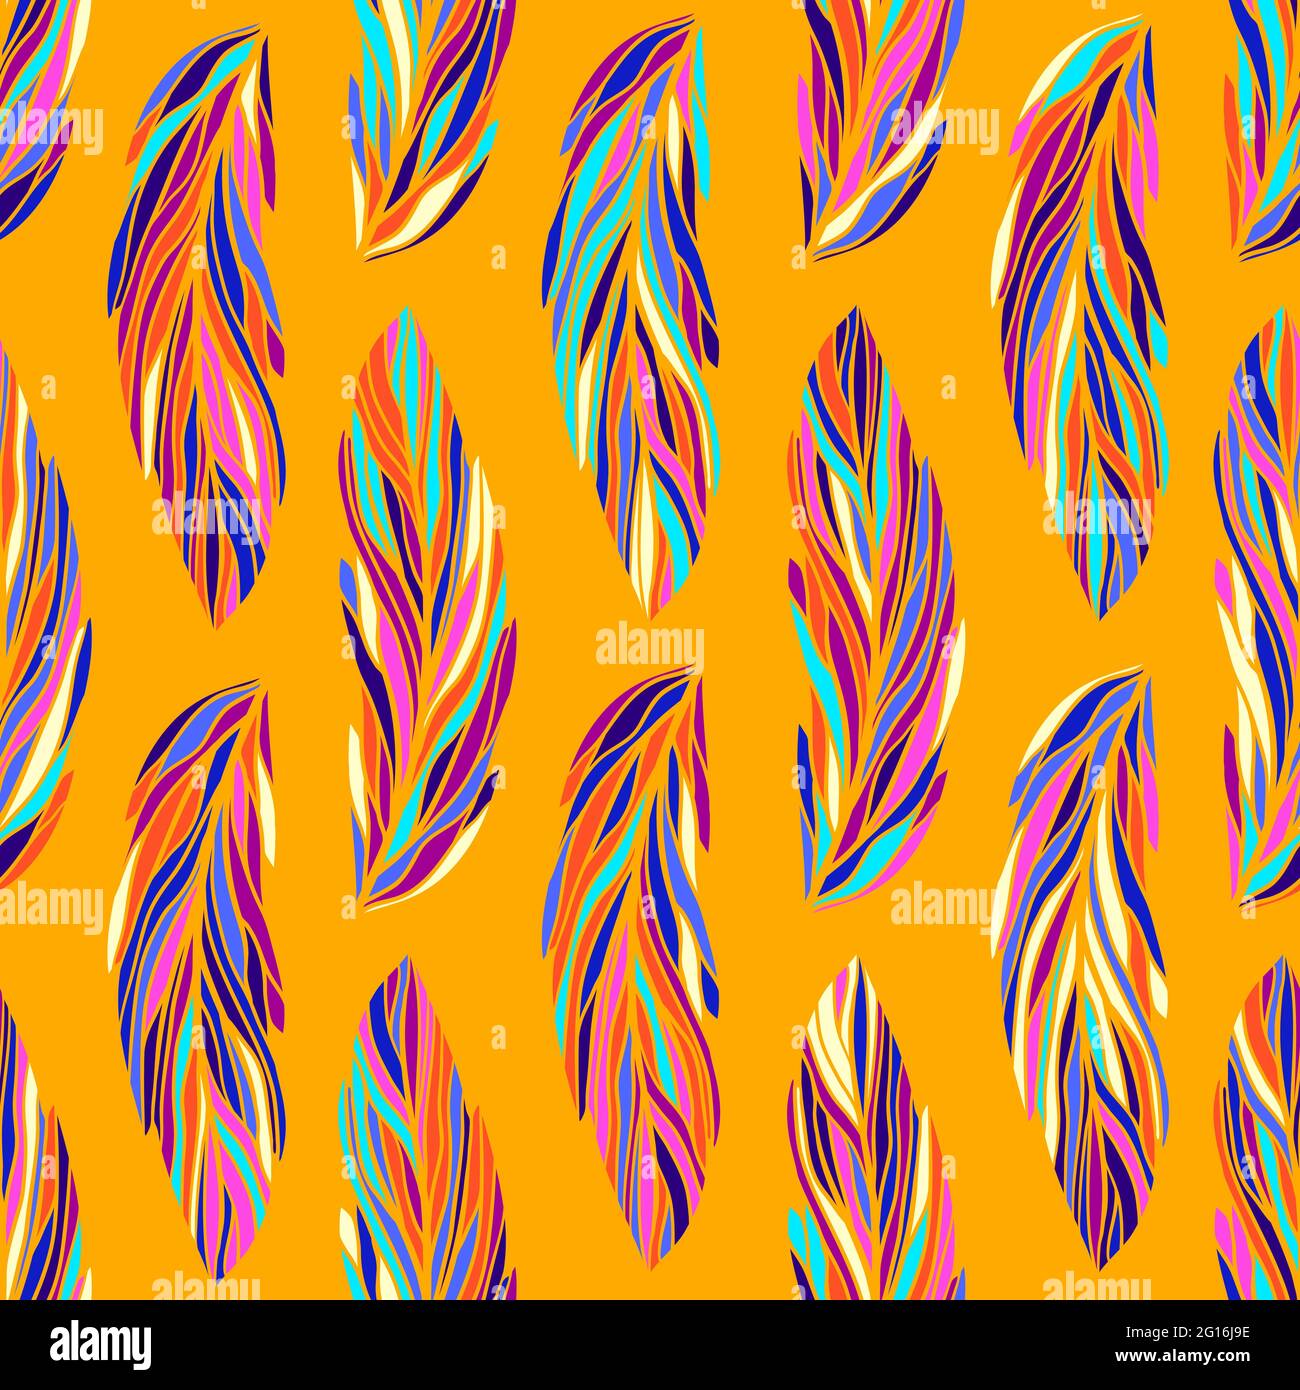 Bunte exotische tropische Vogelfedern, nahtloses Vektor-Muster. Verschiedene mehrfarbige Federn Vektor-Illustration, Boho-Stil. Gelb-orange festlich Stock Vektor